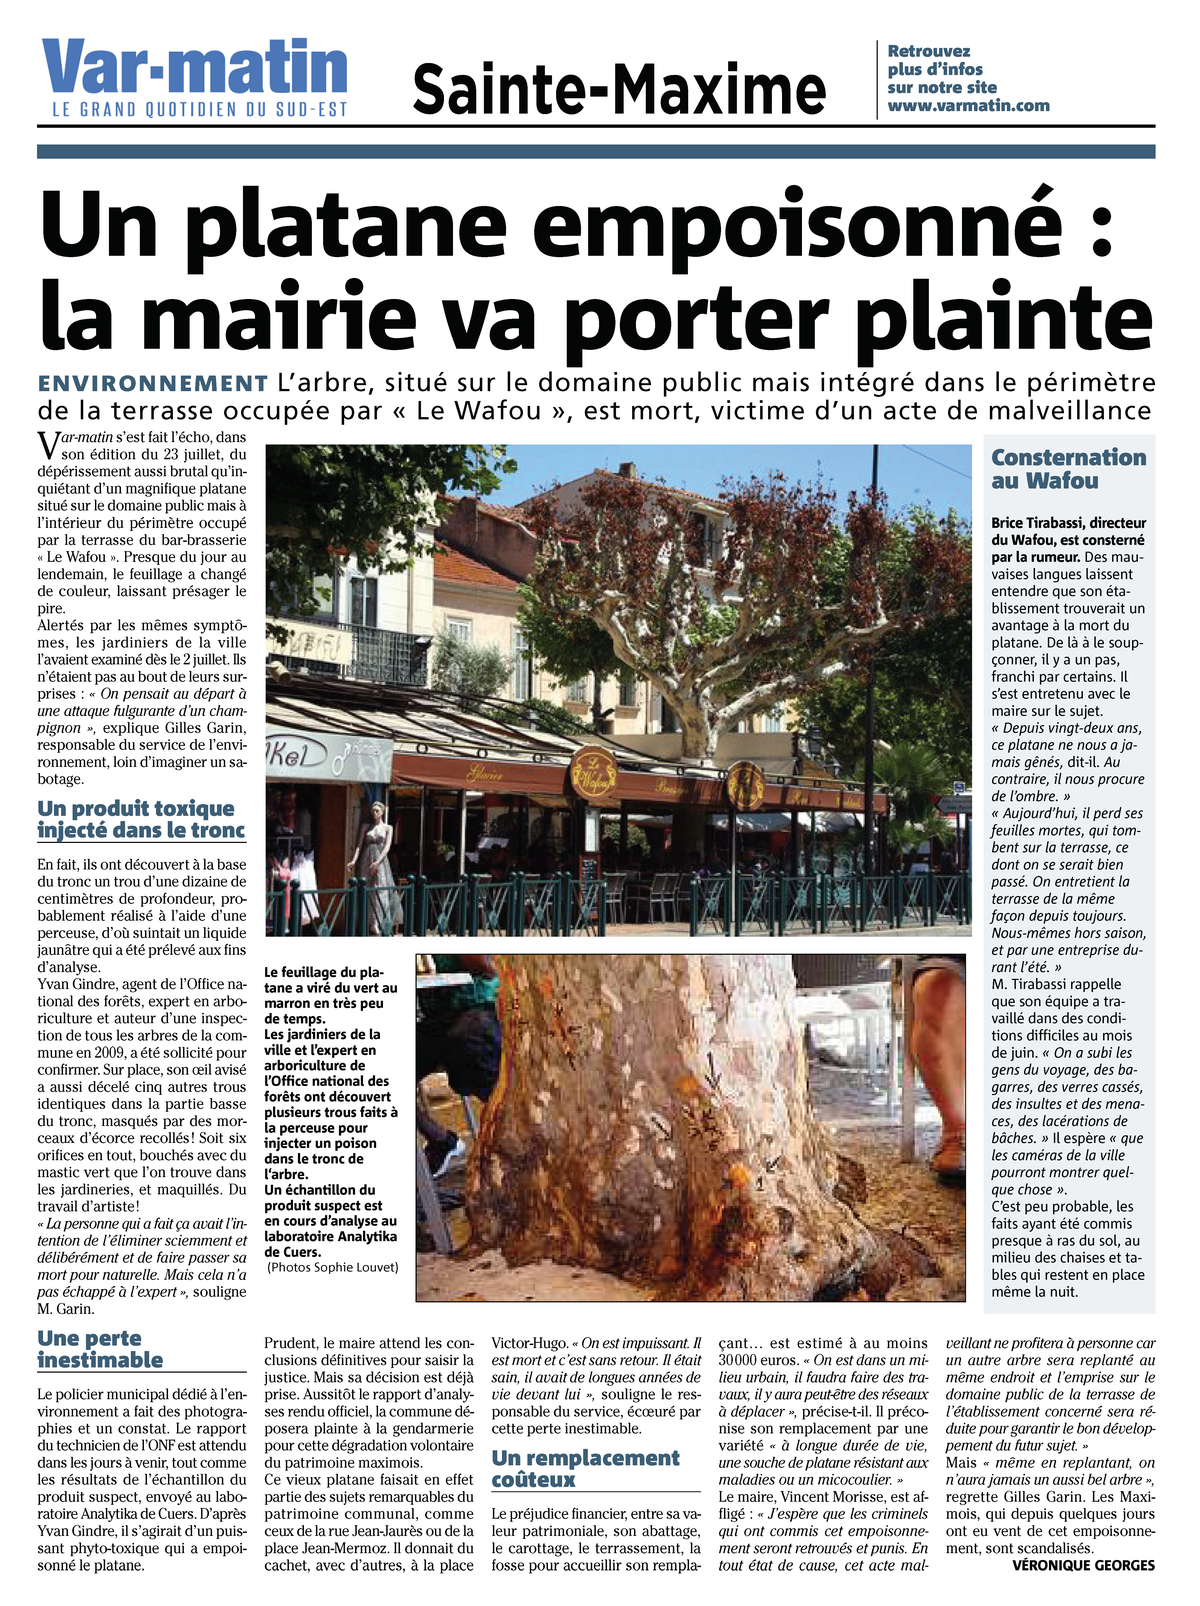 31.07.2010 > VAR MATIN : "Un platane empoisonné : la mairie de Sainte-Maxime va porter plainte"